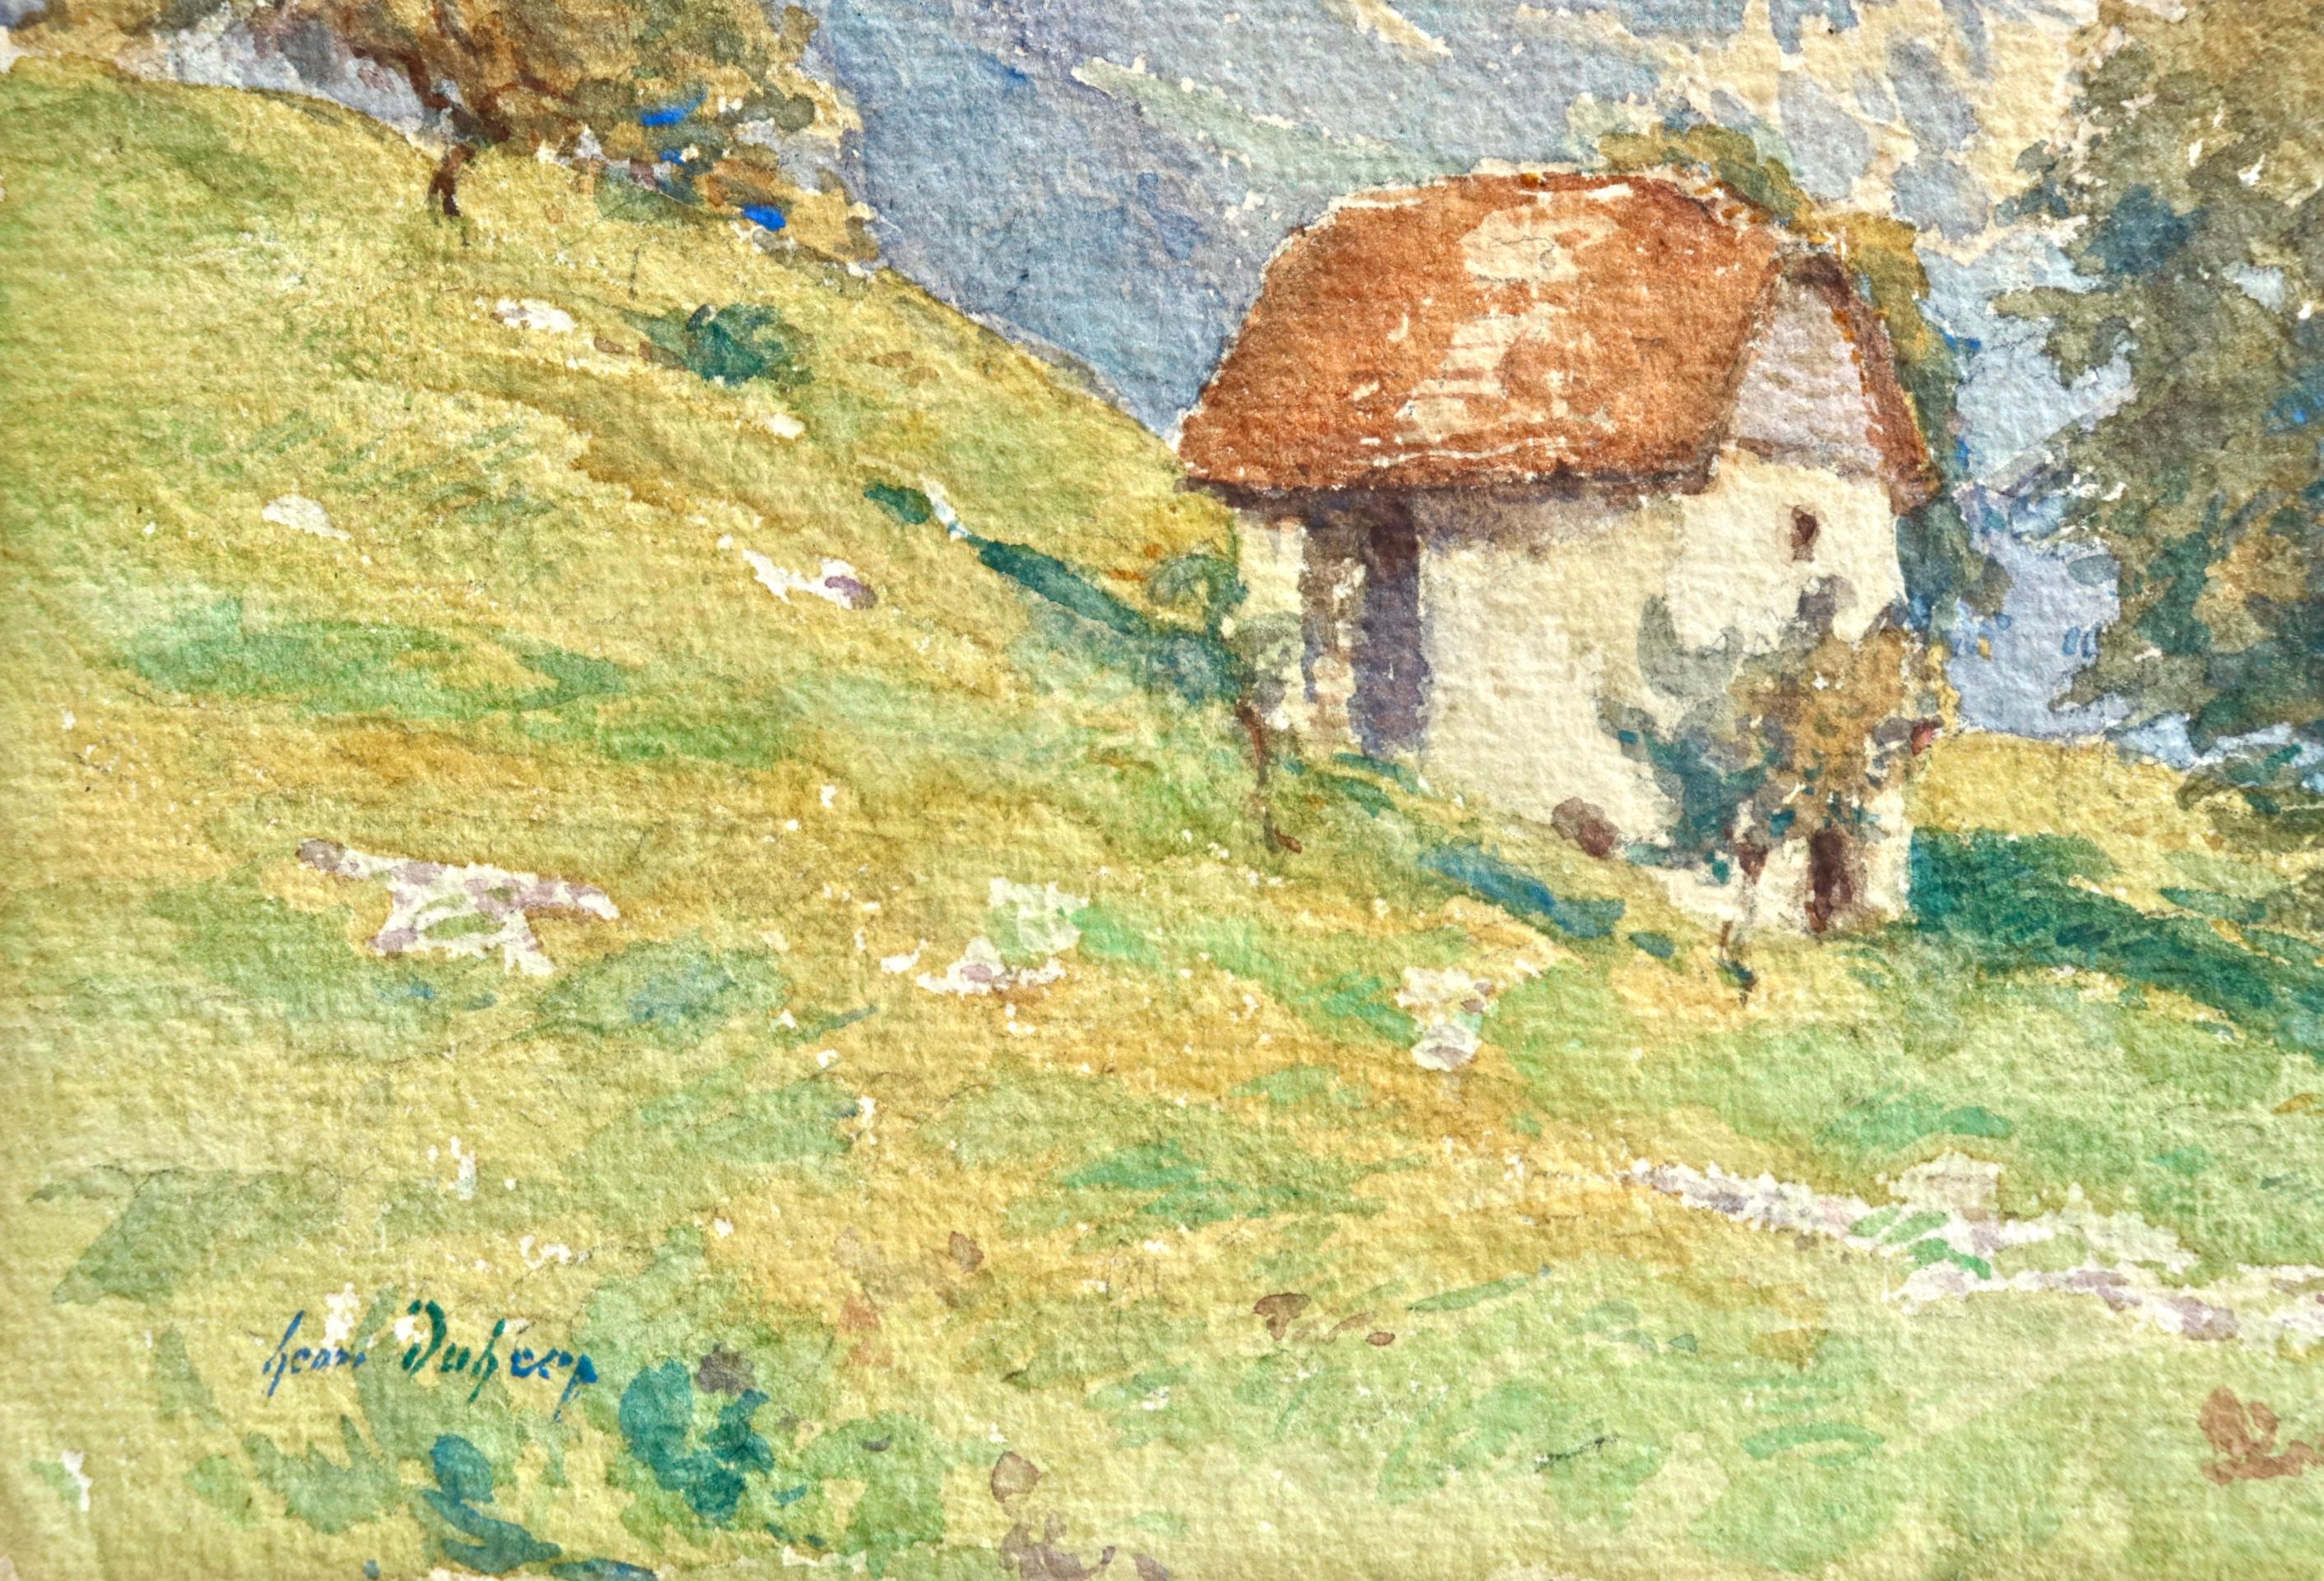 Maison sur la colline - Impressionist Watercolour, Landscape by Henri Duhem For Sale 3